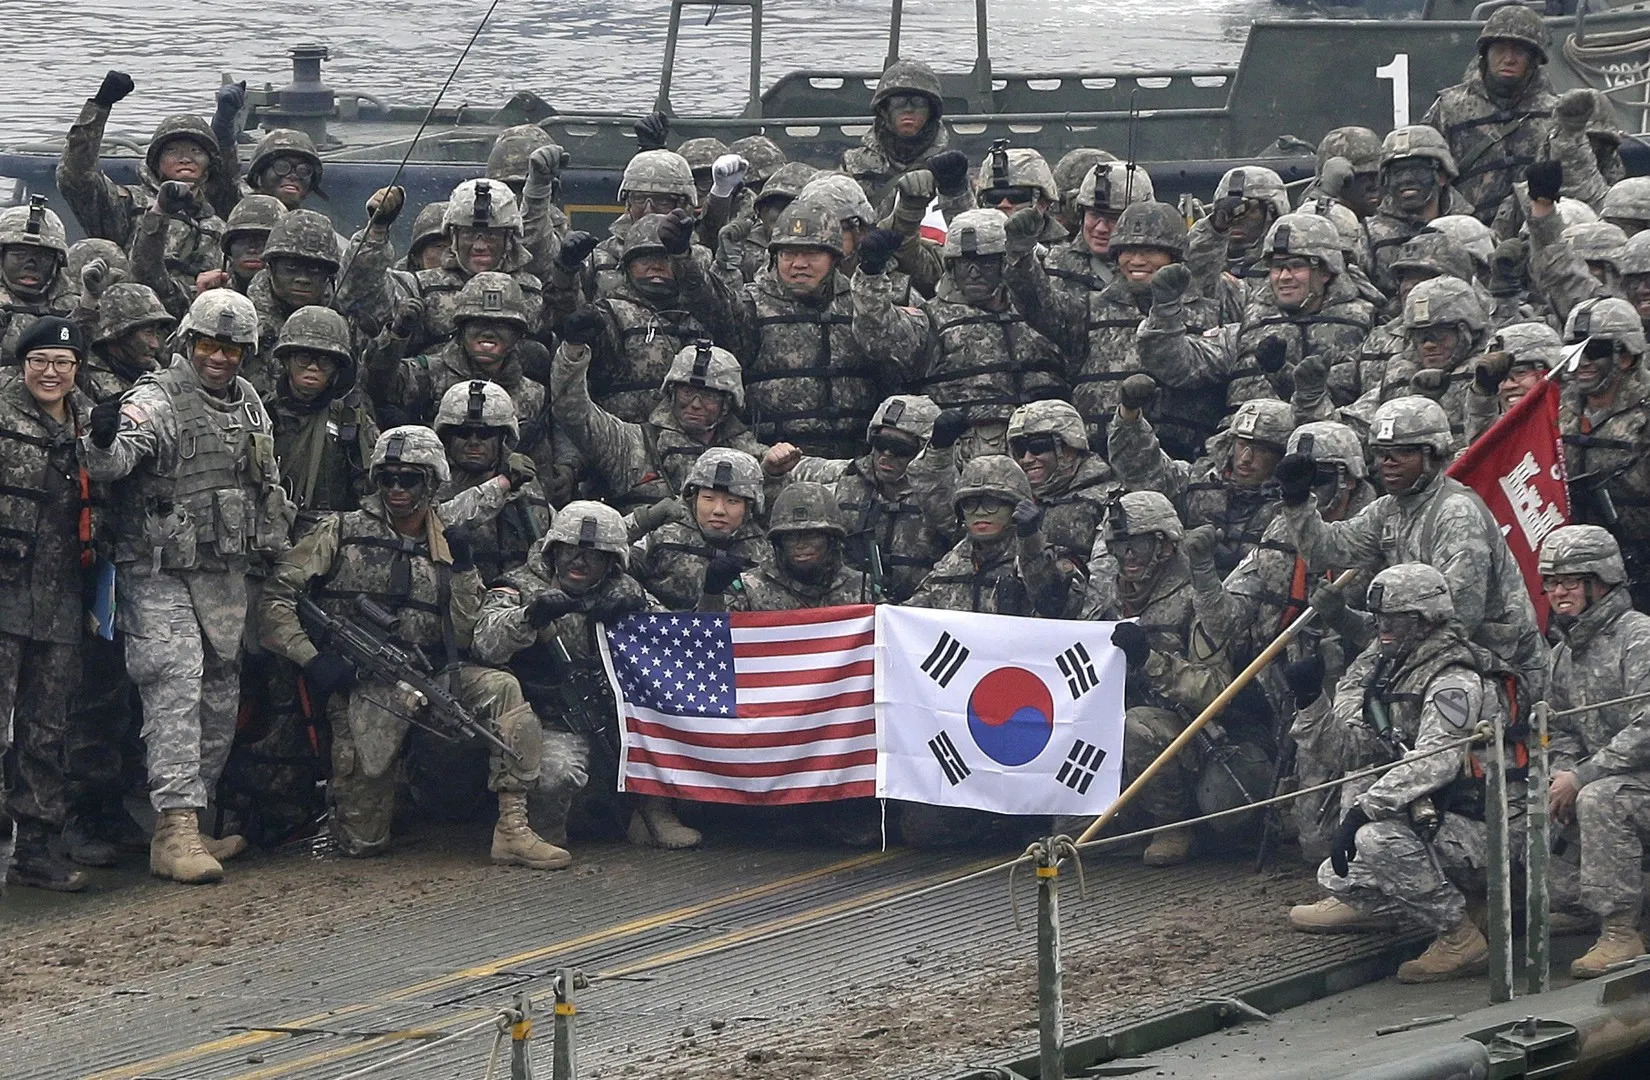 Mỹ trả lại quyền kiểm soát 12 căn cứ quân sự cho Hàn Quốc